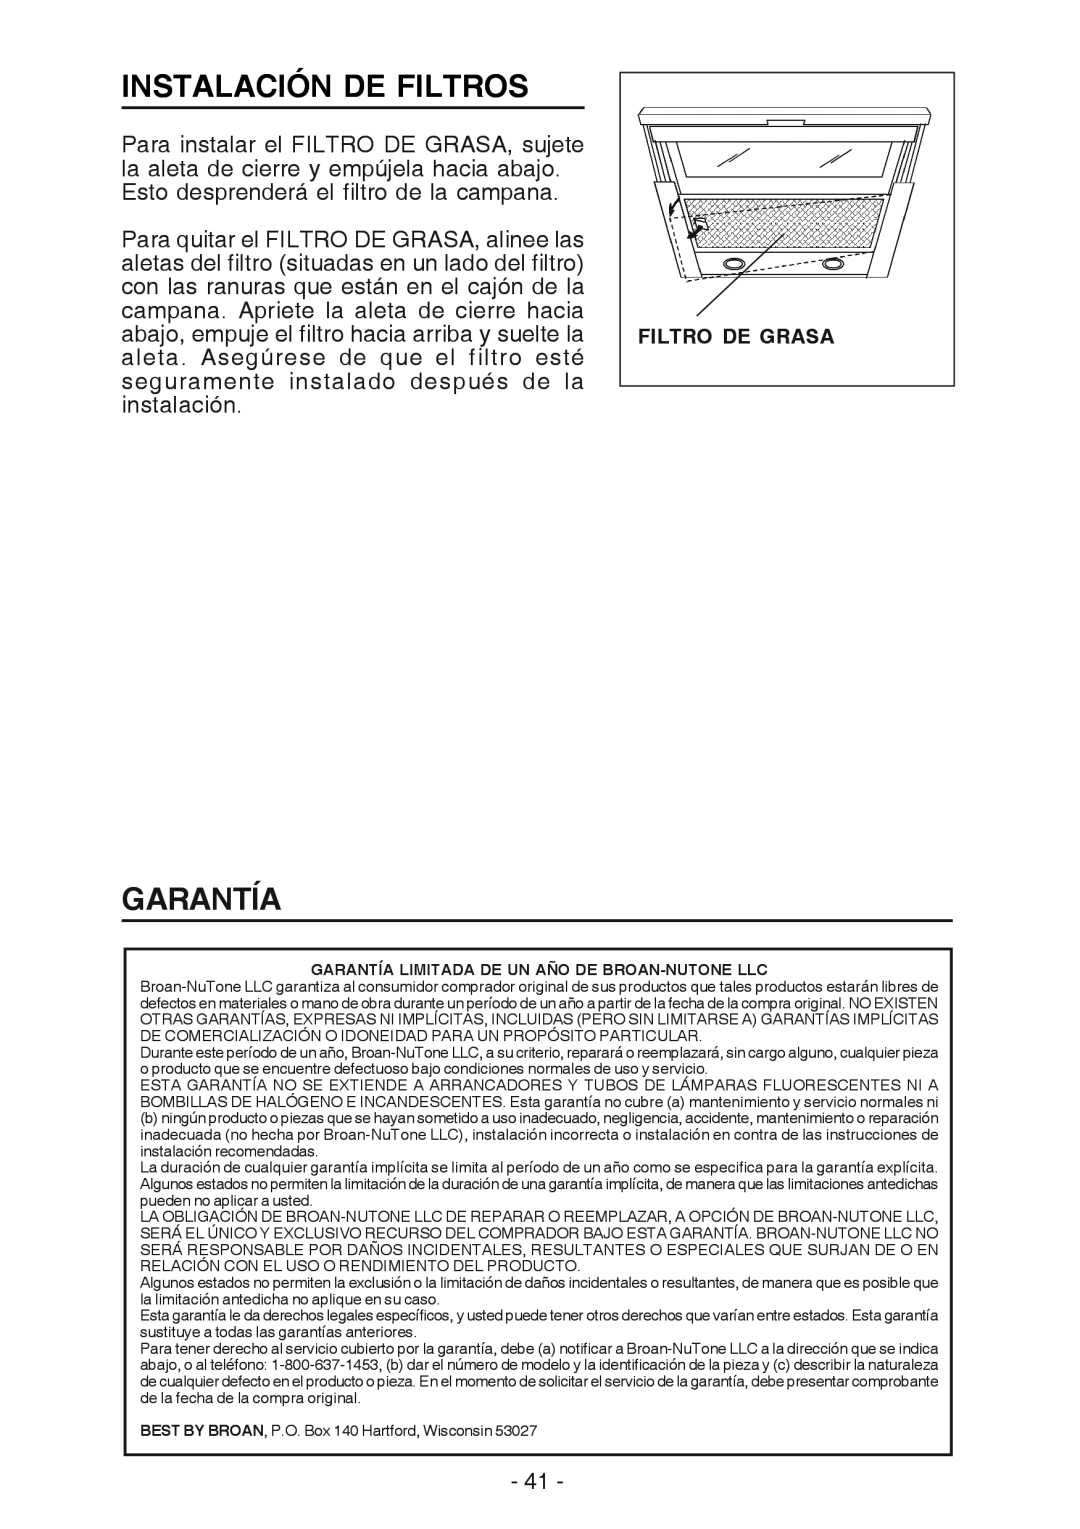 Best U102E manual Instalación De Filtros, Garantía, Filtro De Grasa 